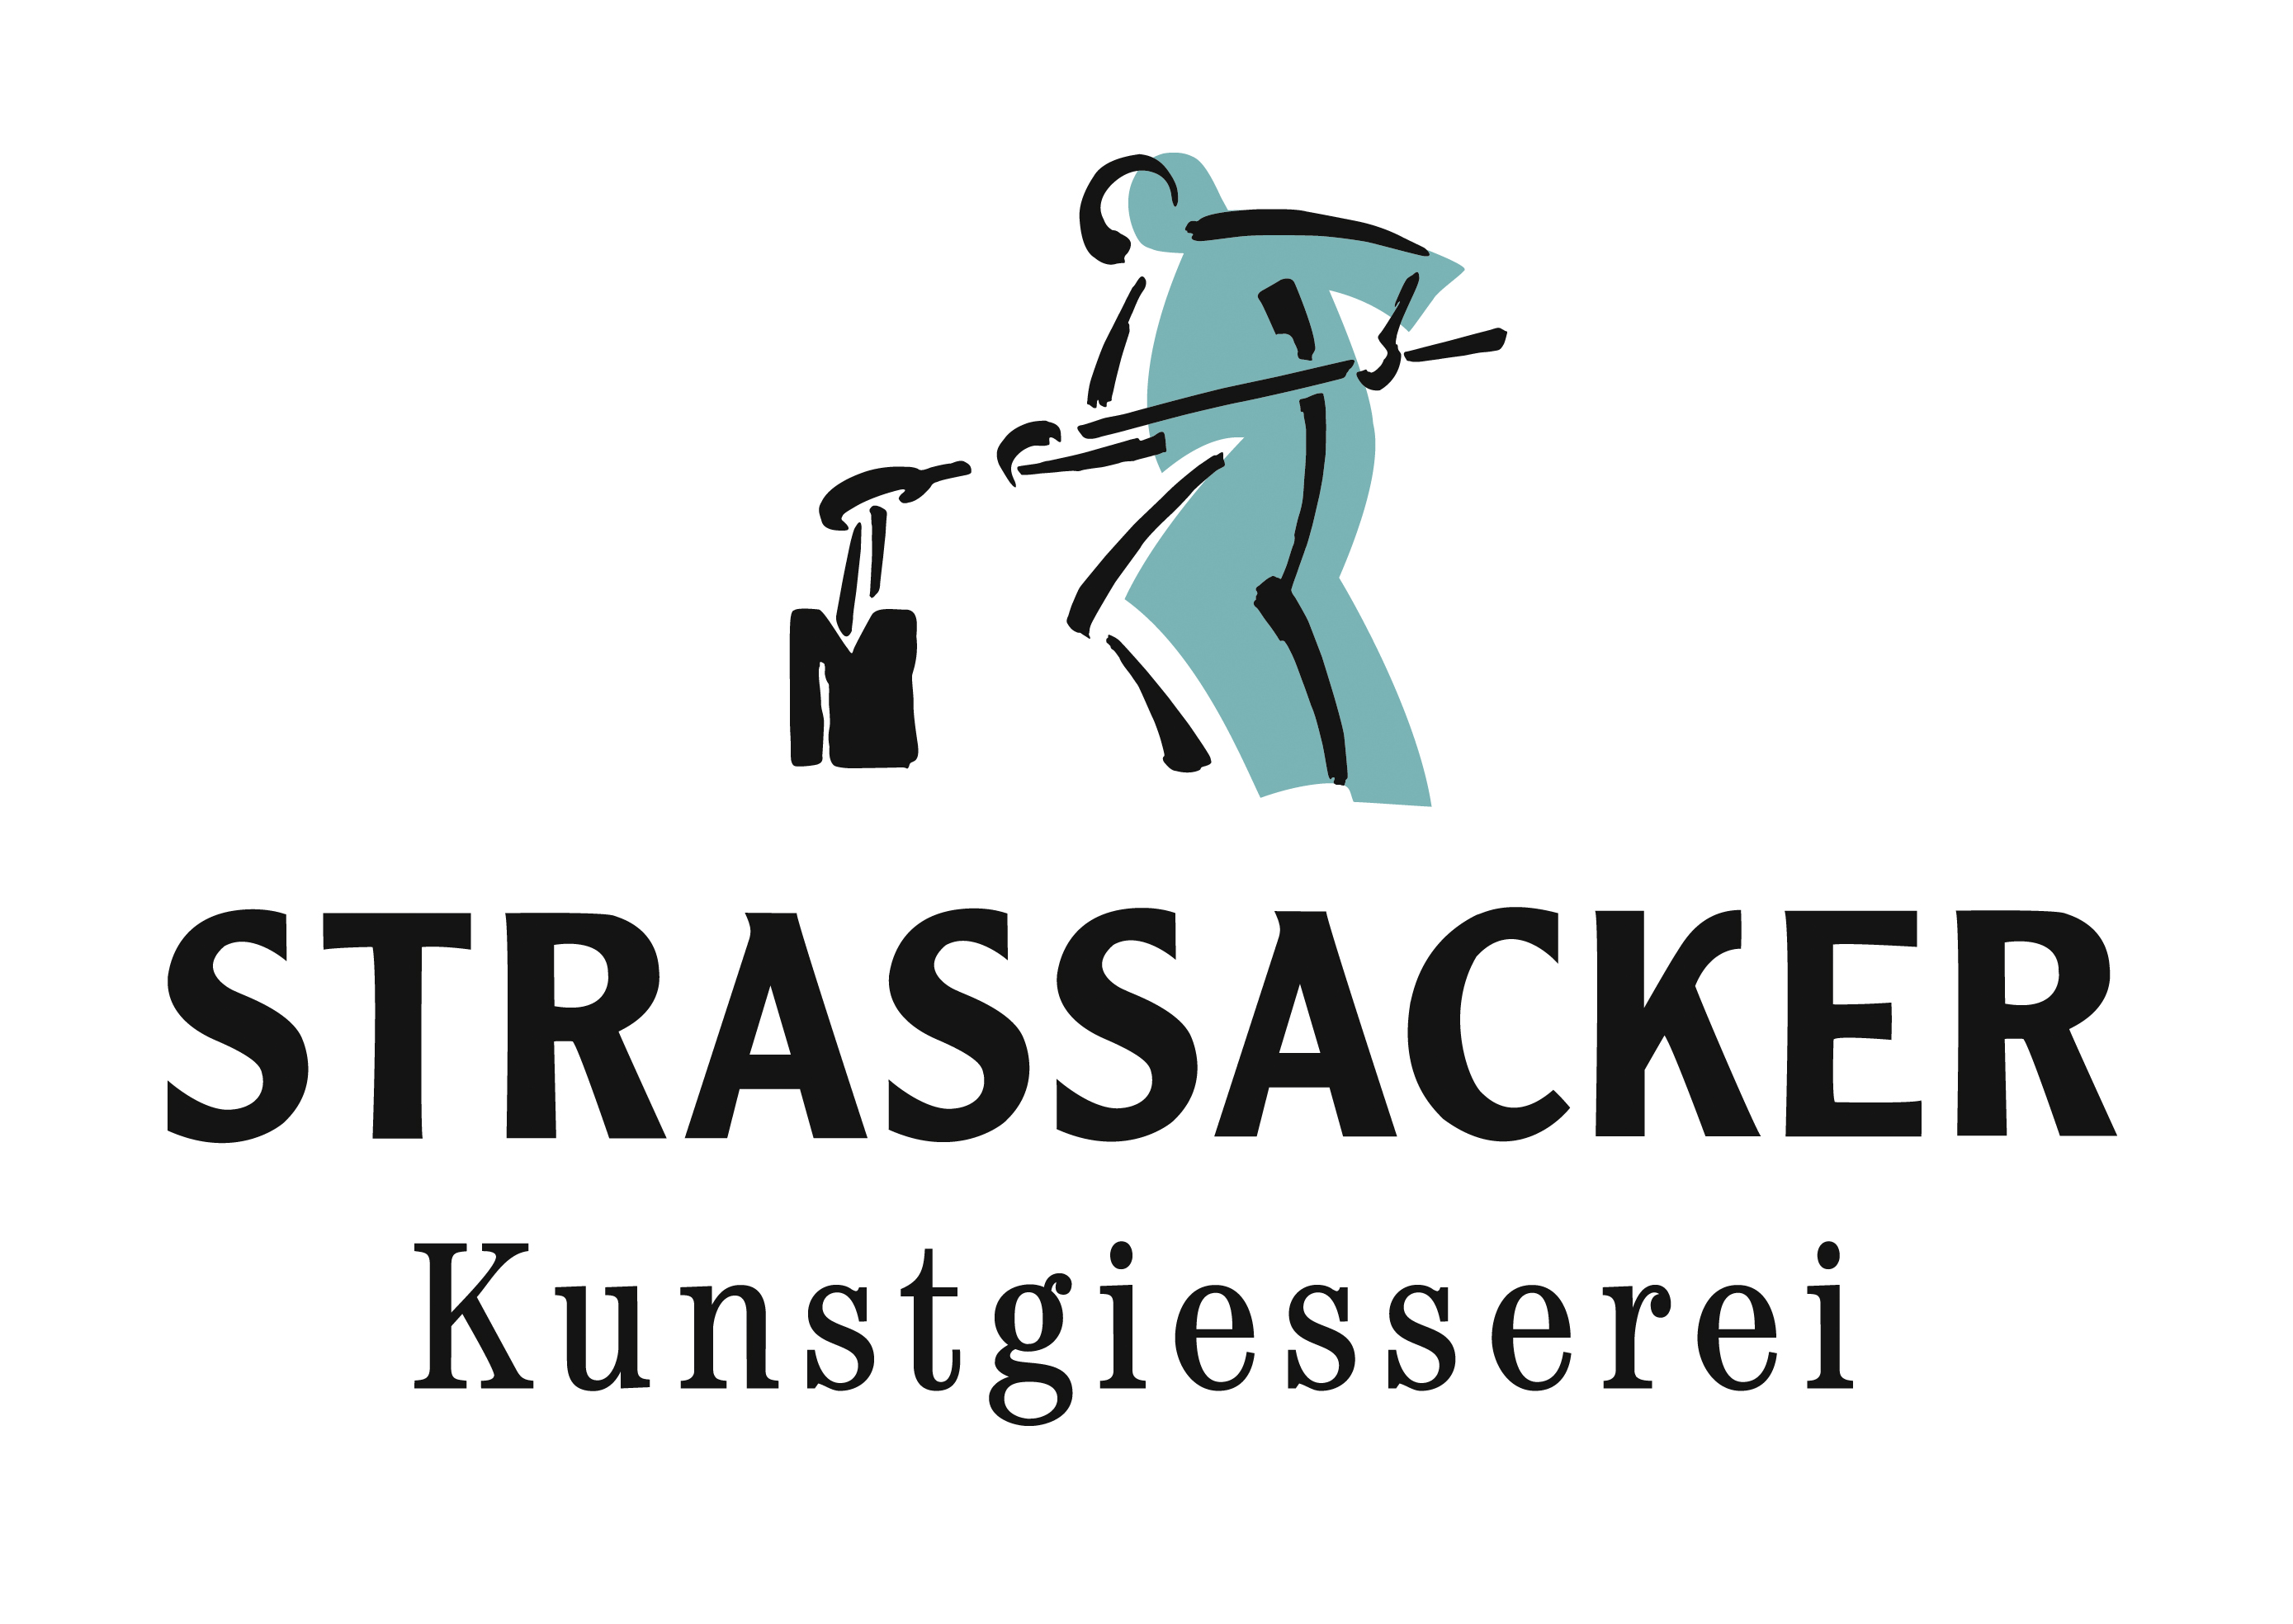 Strassacker Kunstgiesserei